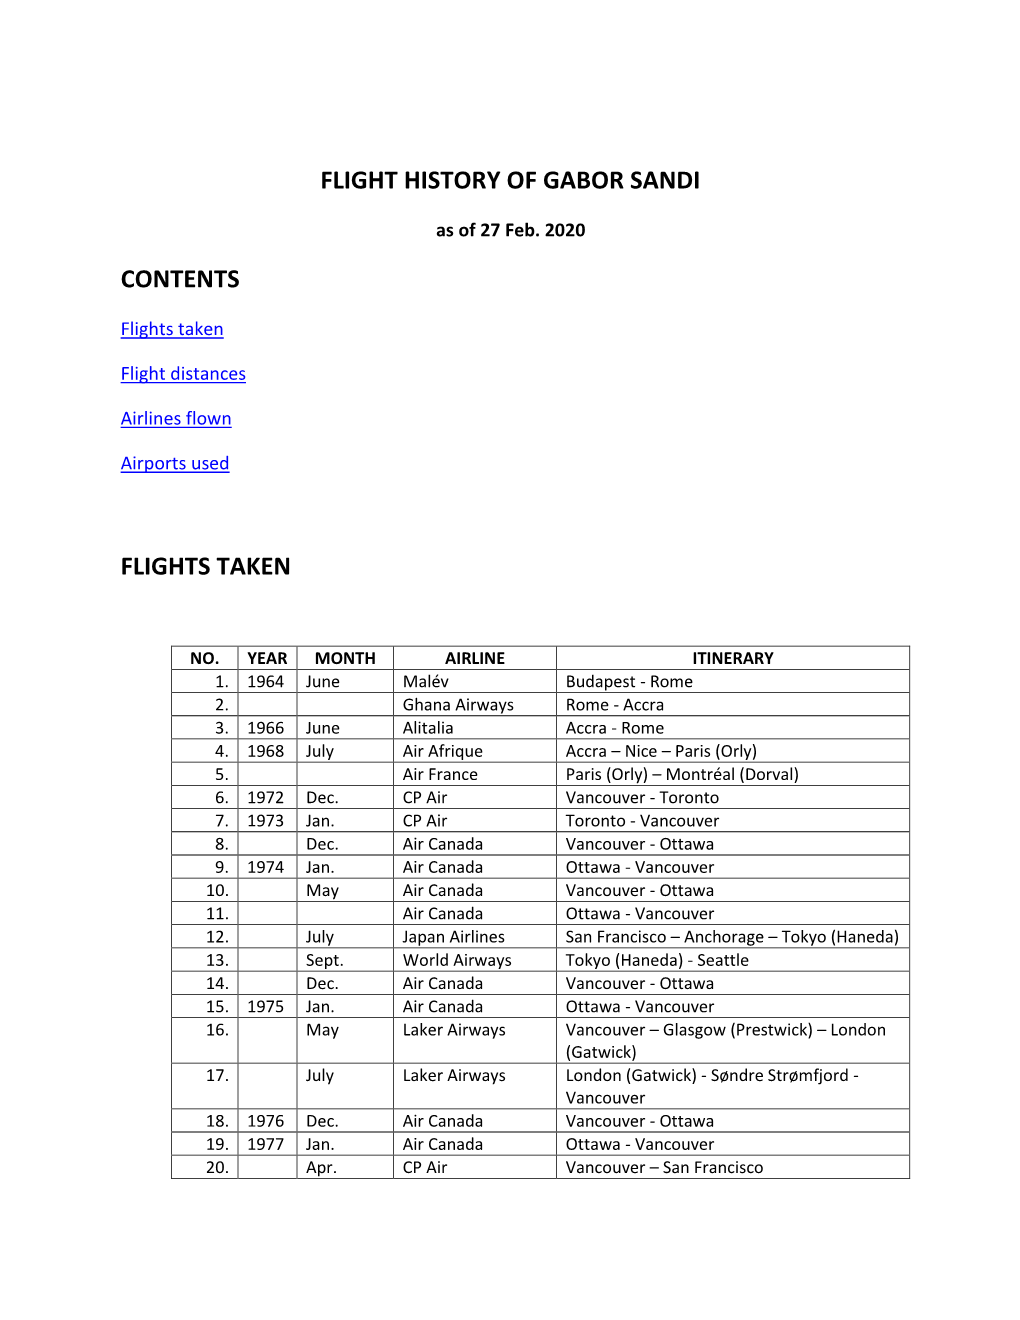 Flight History of Gabor Sandi Contents Flights Taken